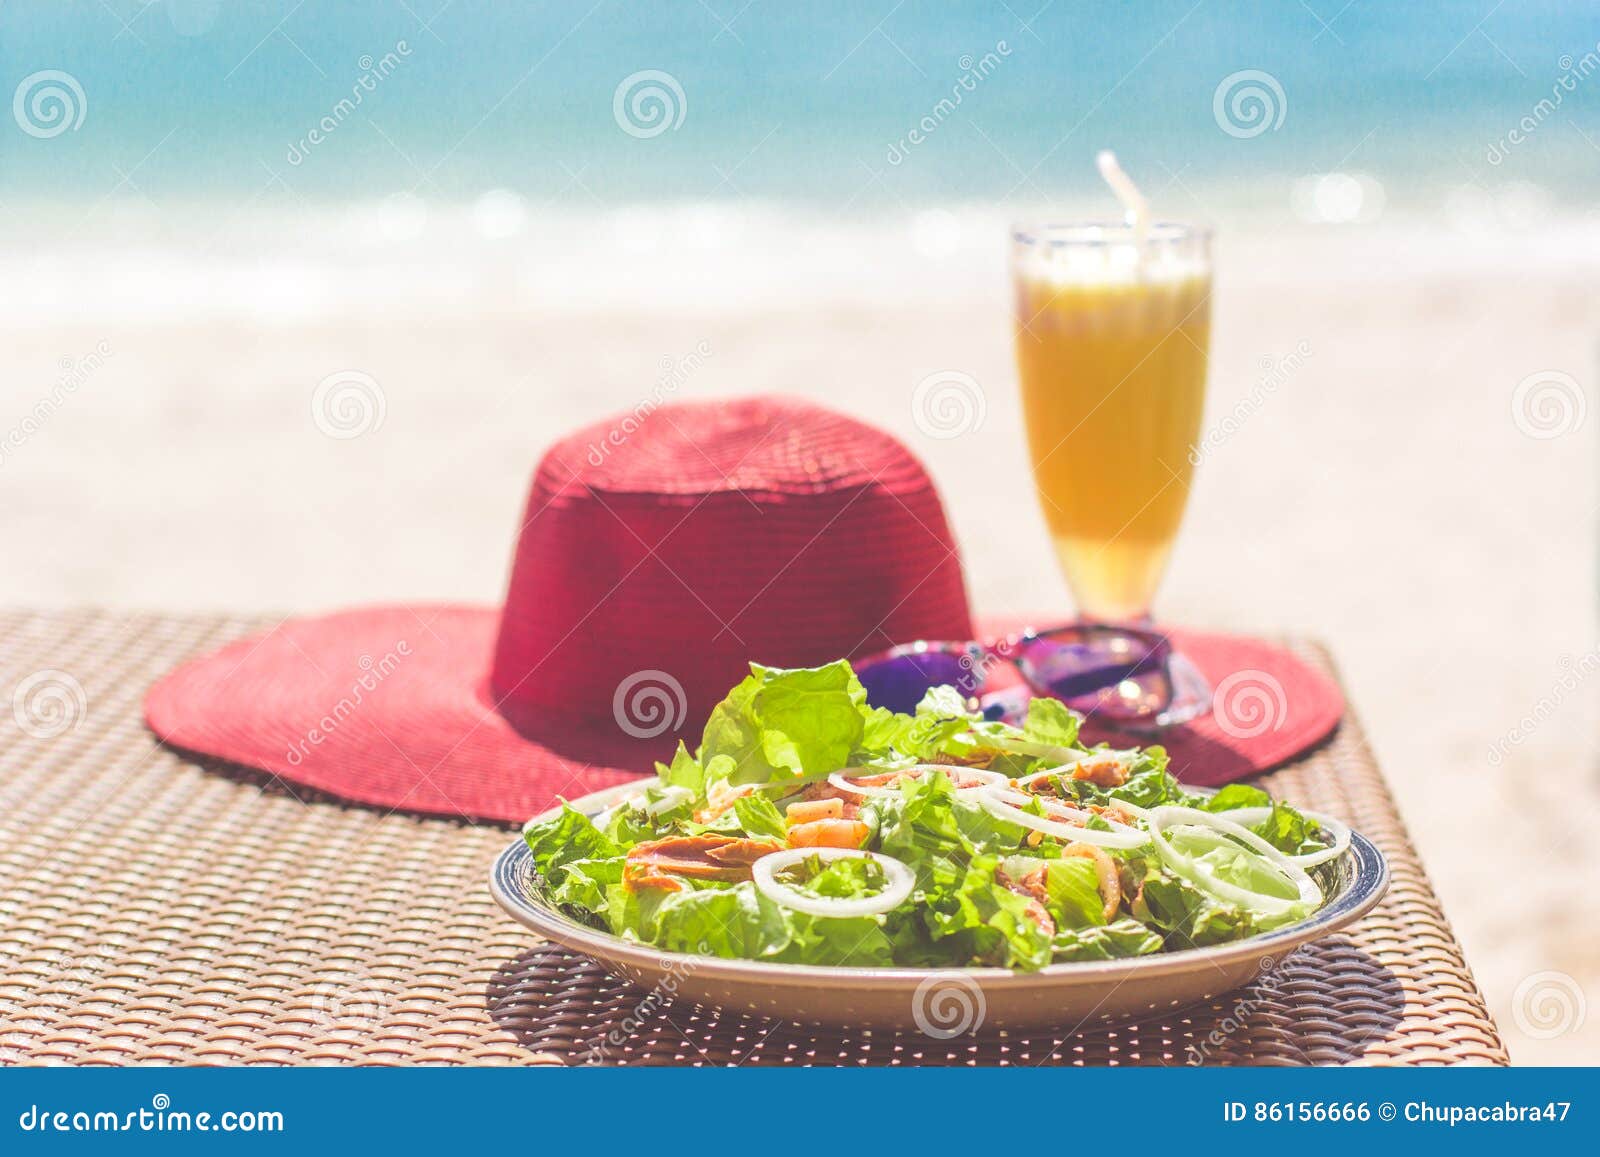 Seafood Salad, Orange Fresh Juice, Hat And Sunglasses On ...